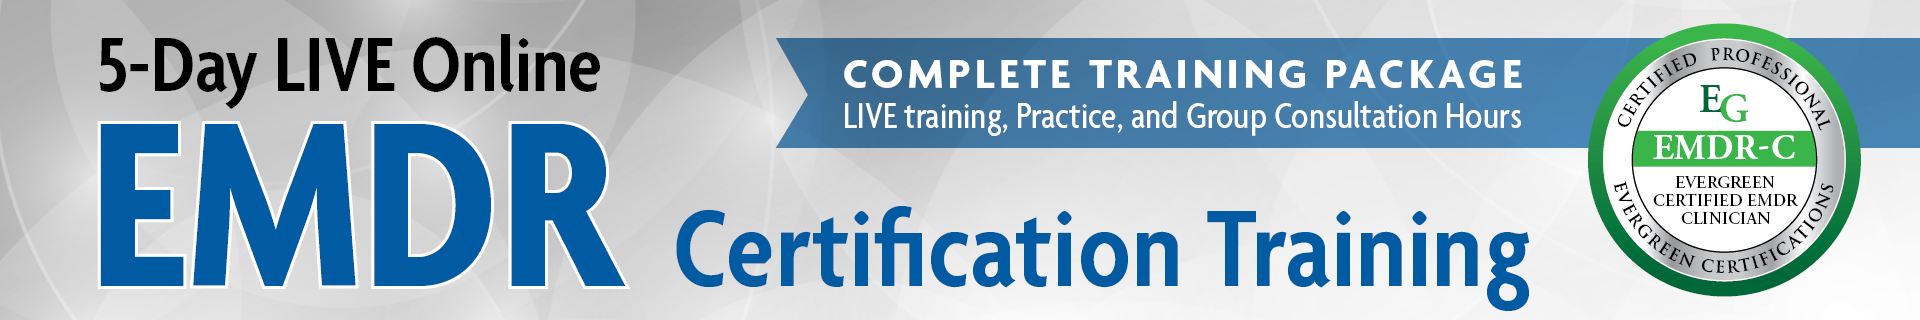 5-Day LIVE Online EMDR Certification Training